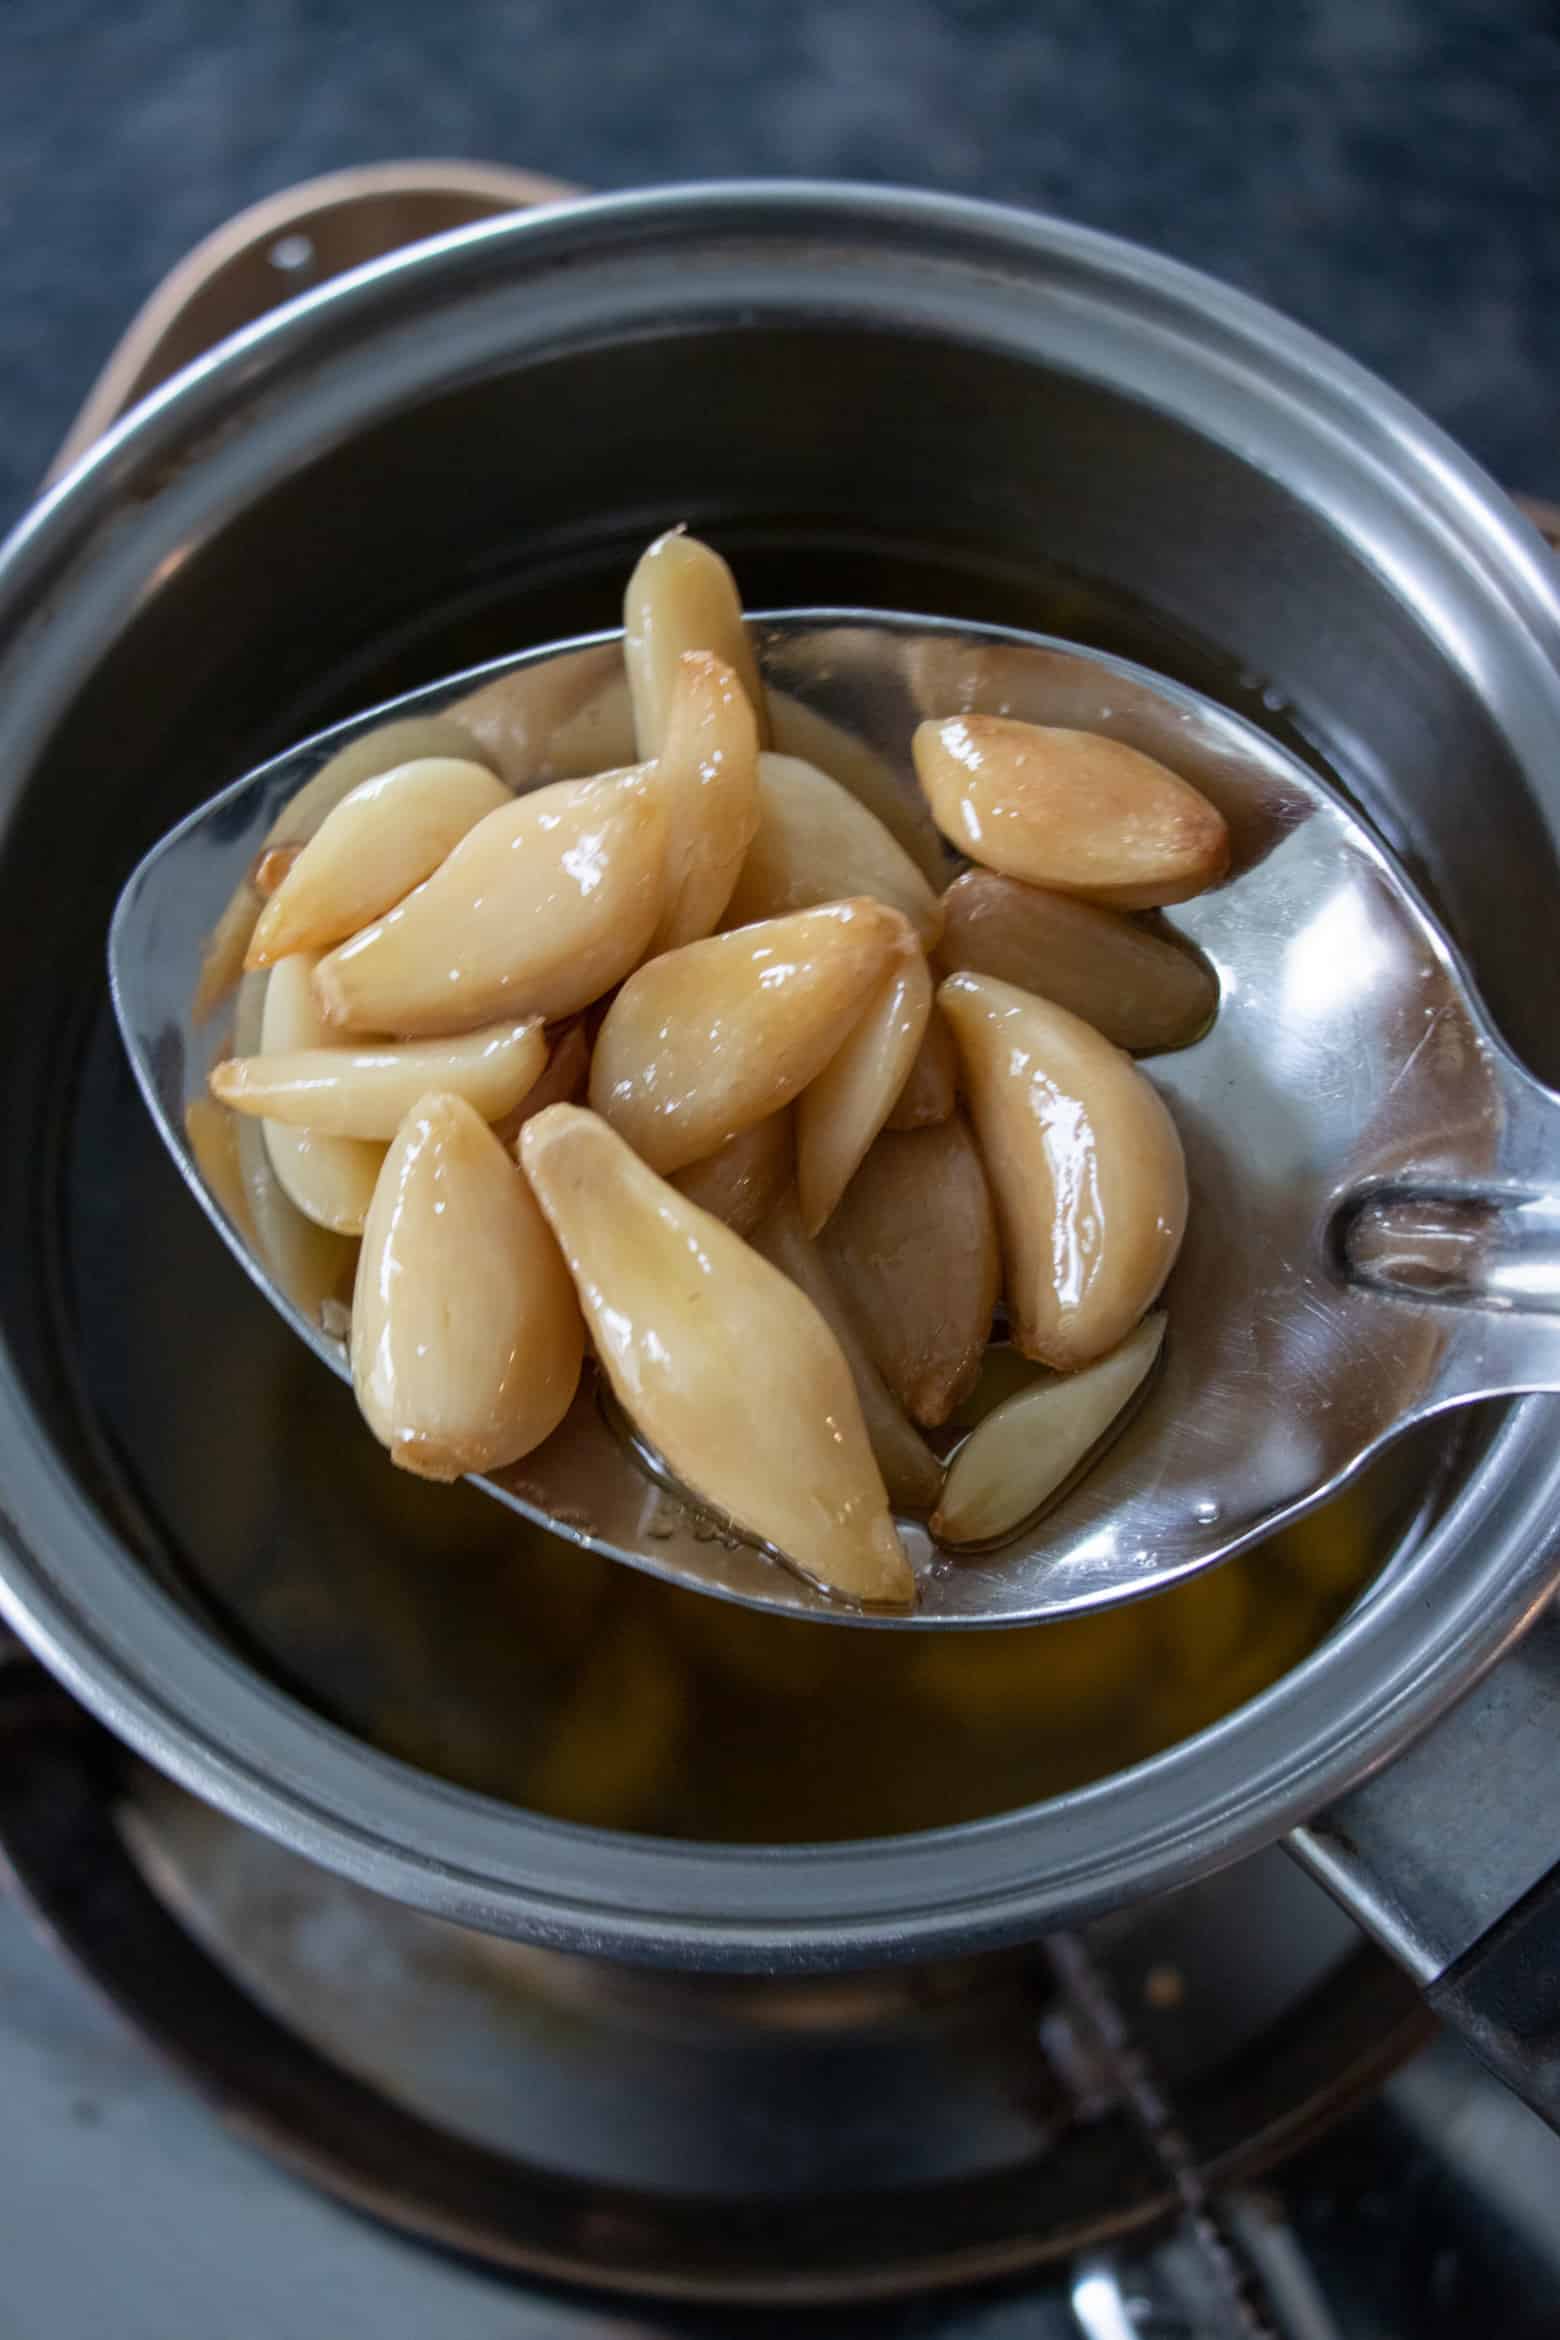 garlic confit in a spoon